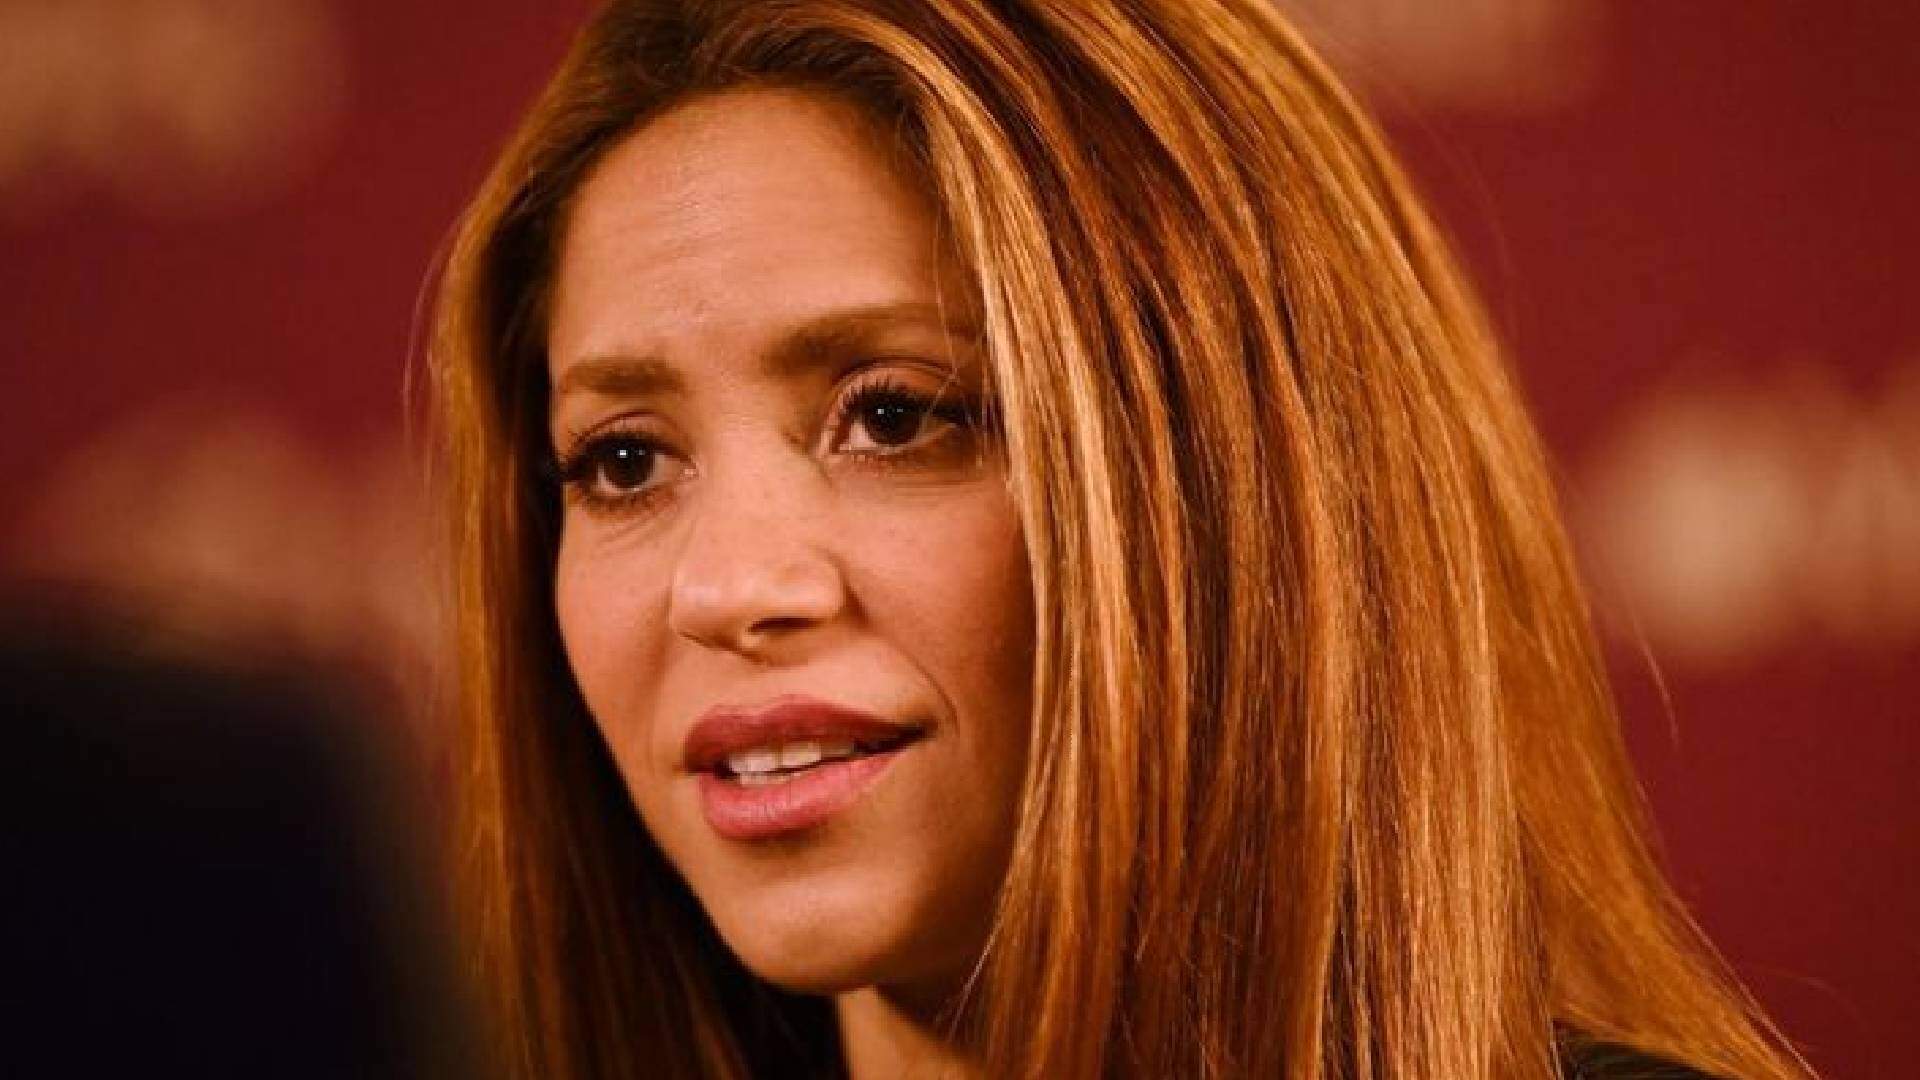 Shakira vai parar na cadeia? MP espanhol pede prisão da cantora por motivo polêmico - Metropolitana FM